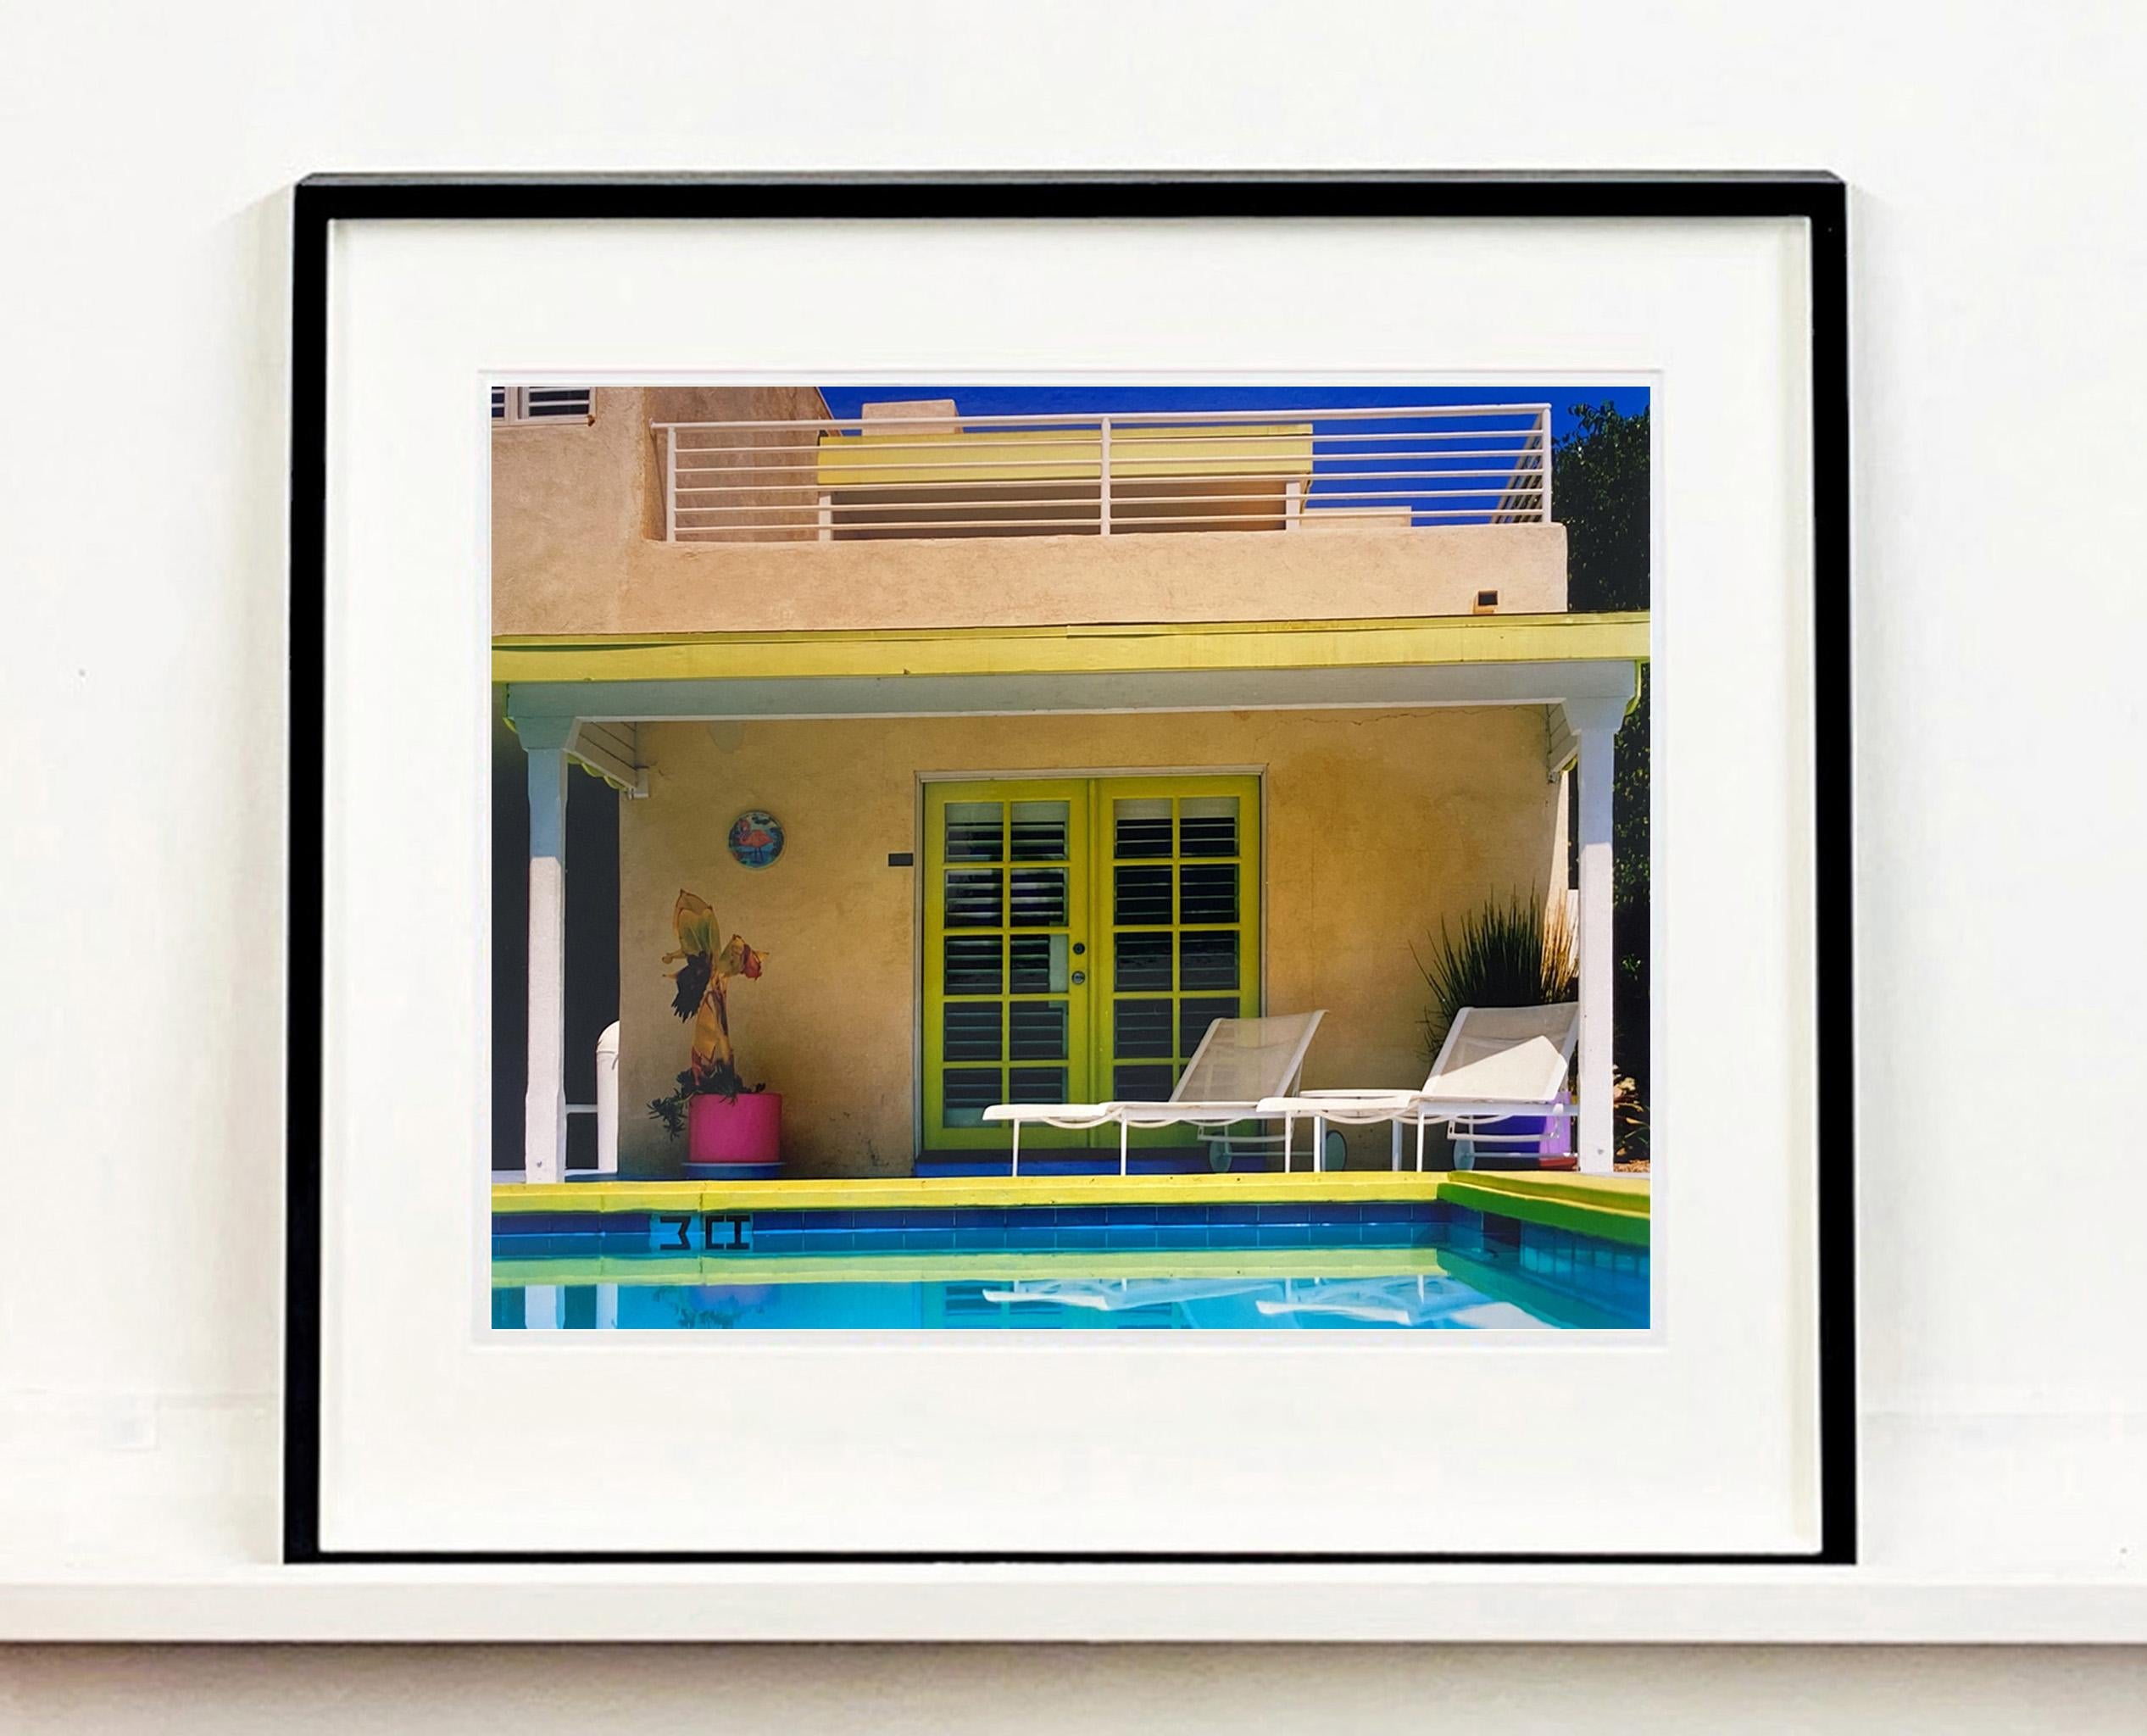 Palm Springs Poolside, photographie de Richard Heeps à Ballantines Movie Coloni. Cette œuvre d'art capture l'architecture classique du milieu du siècle de Palm Springs sur fond de ciel bleu saturé et de piscine fraîche avec des accents de rose et de